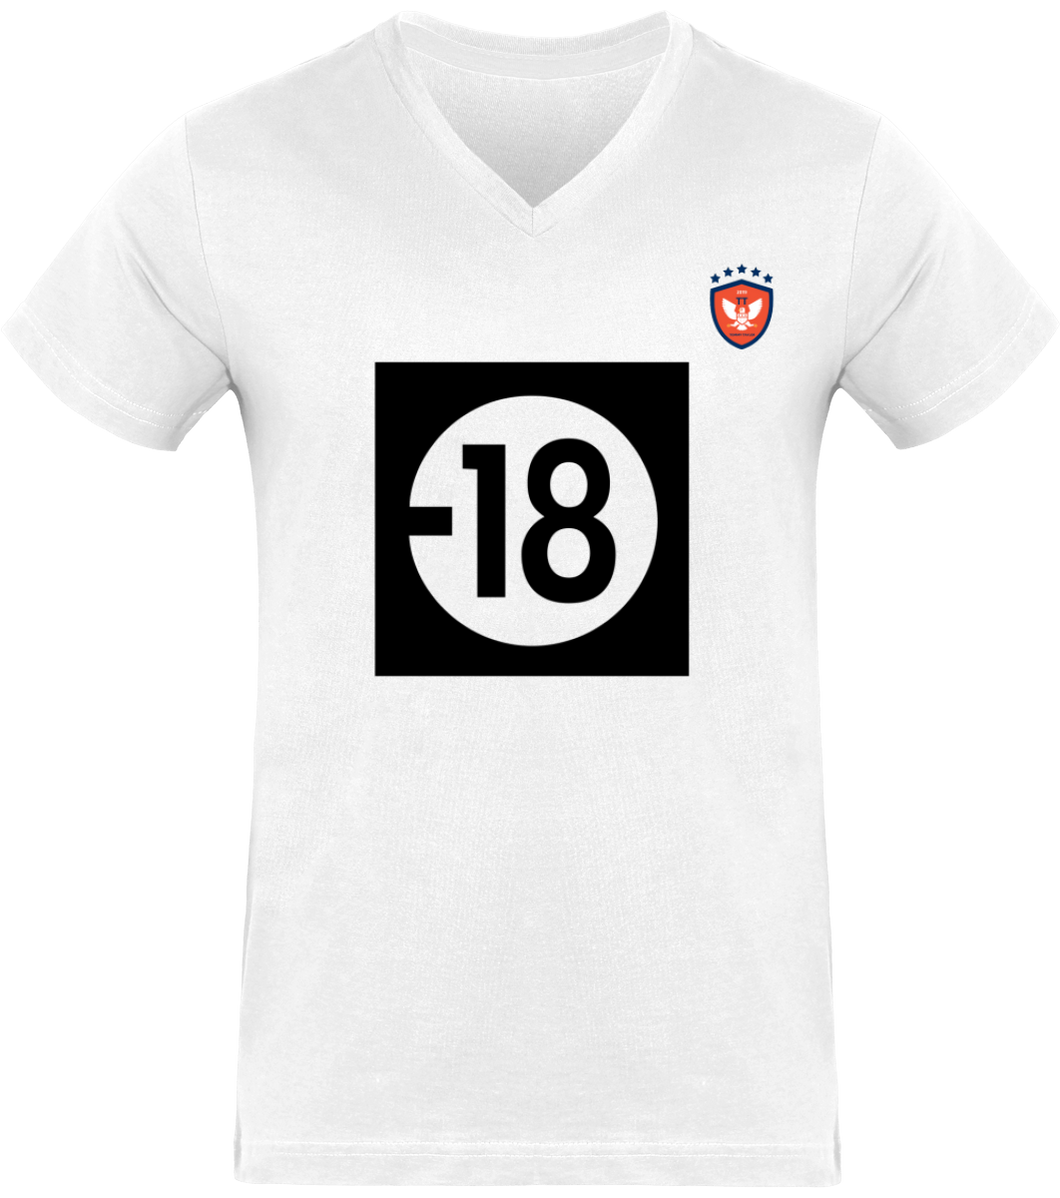 NOUVEAUTÉ: T-shirt Col V L'Interdit de l' Homme Tommy Taylor Mode Made In France. Imprimés et brodés en FRANCE